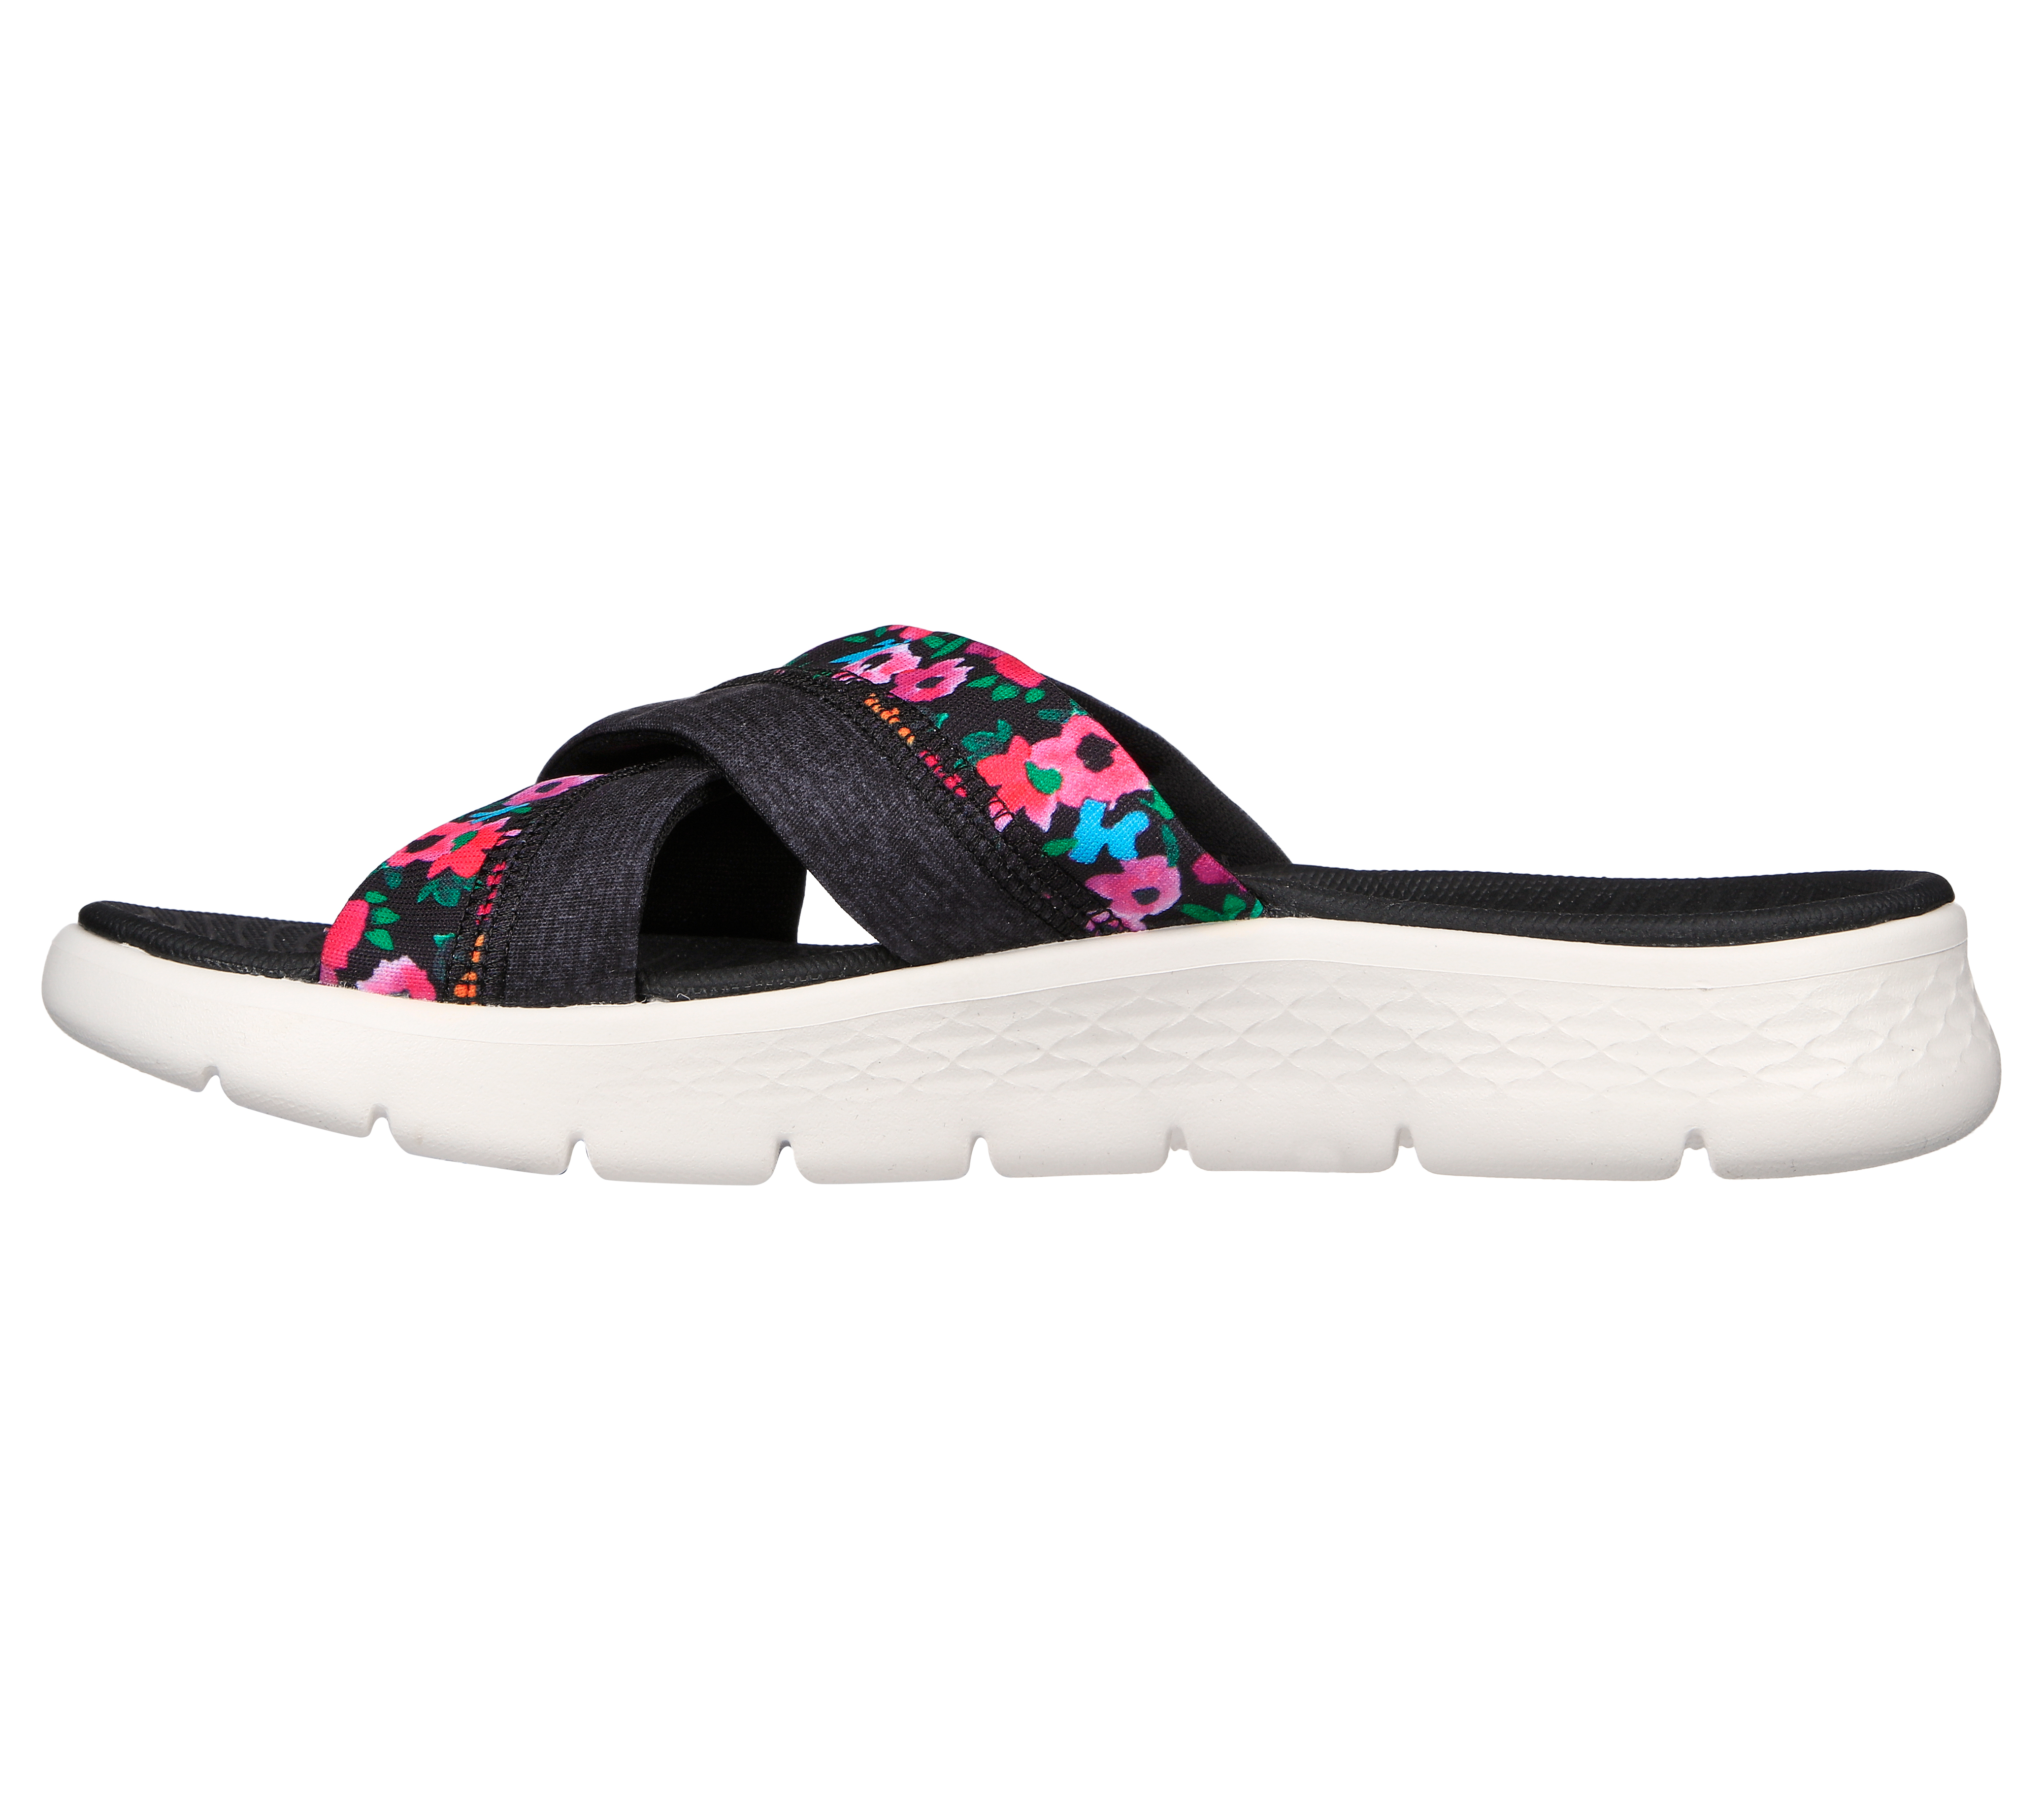 GO WALK Sandal - Blossoms | SKECHERS